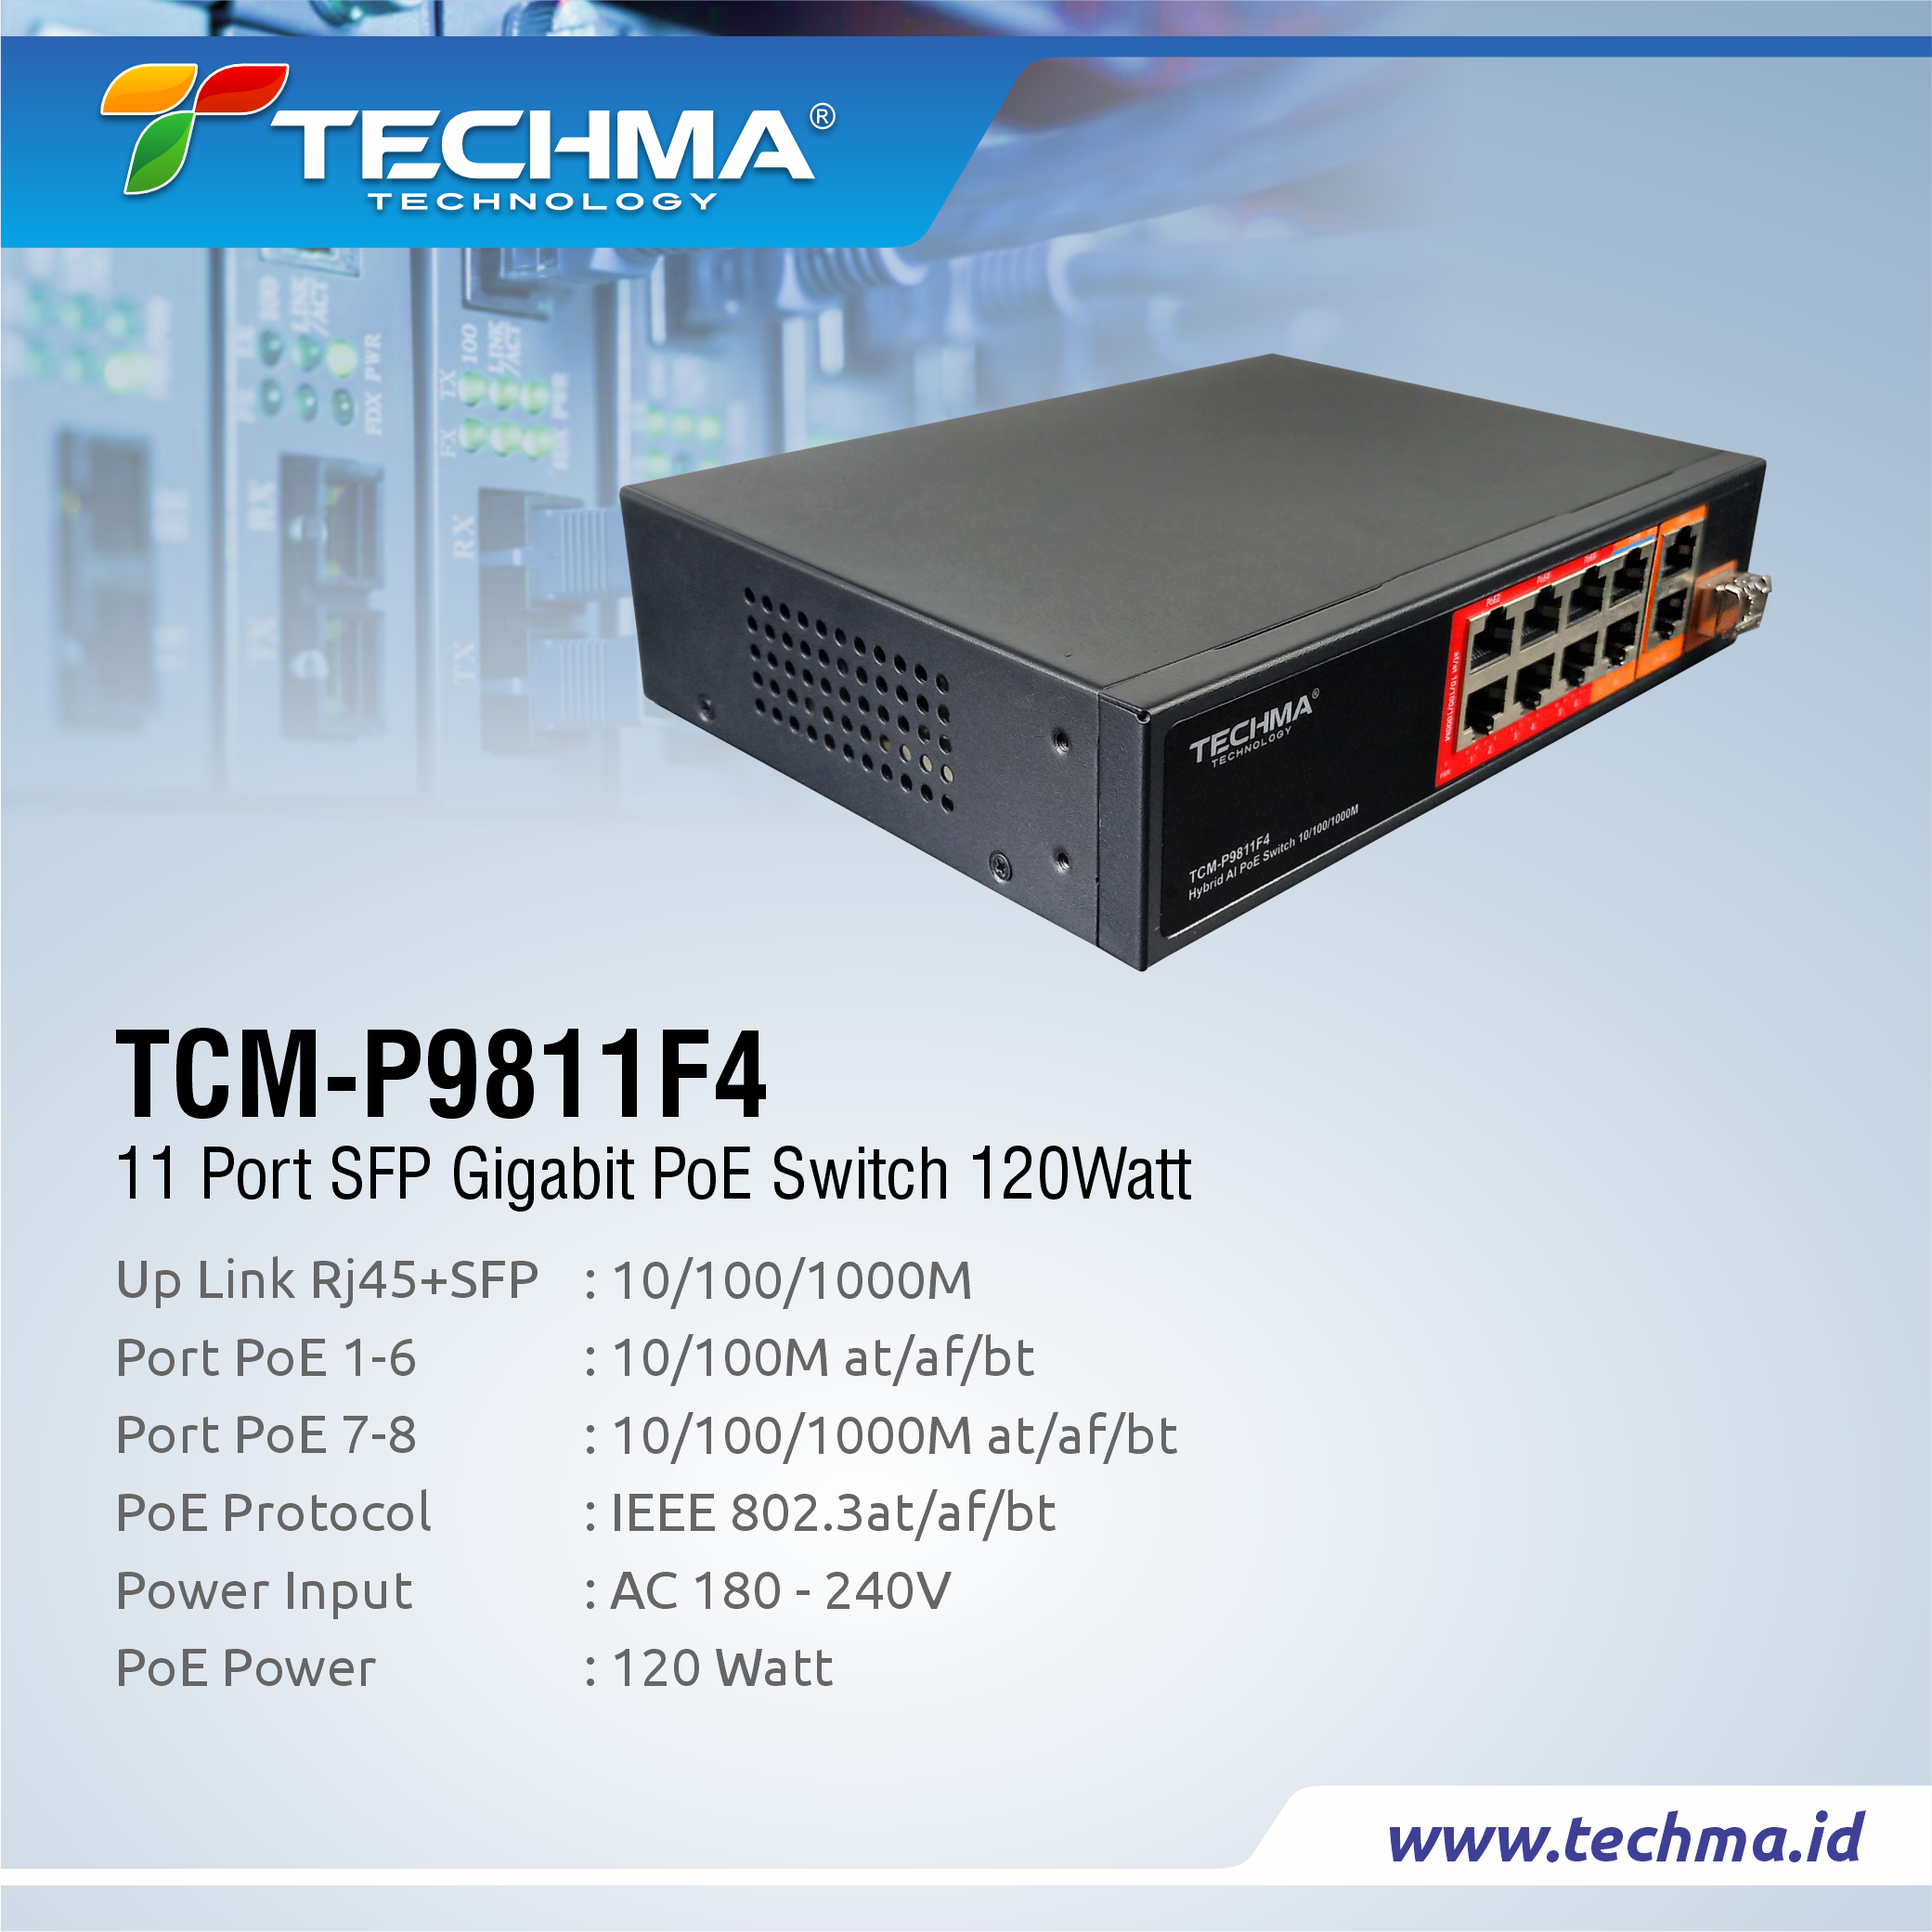 TCM-P9811F4 web 2